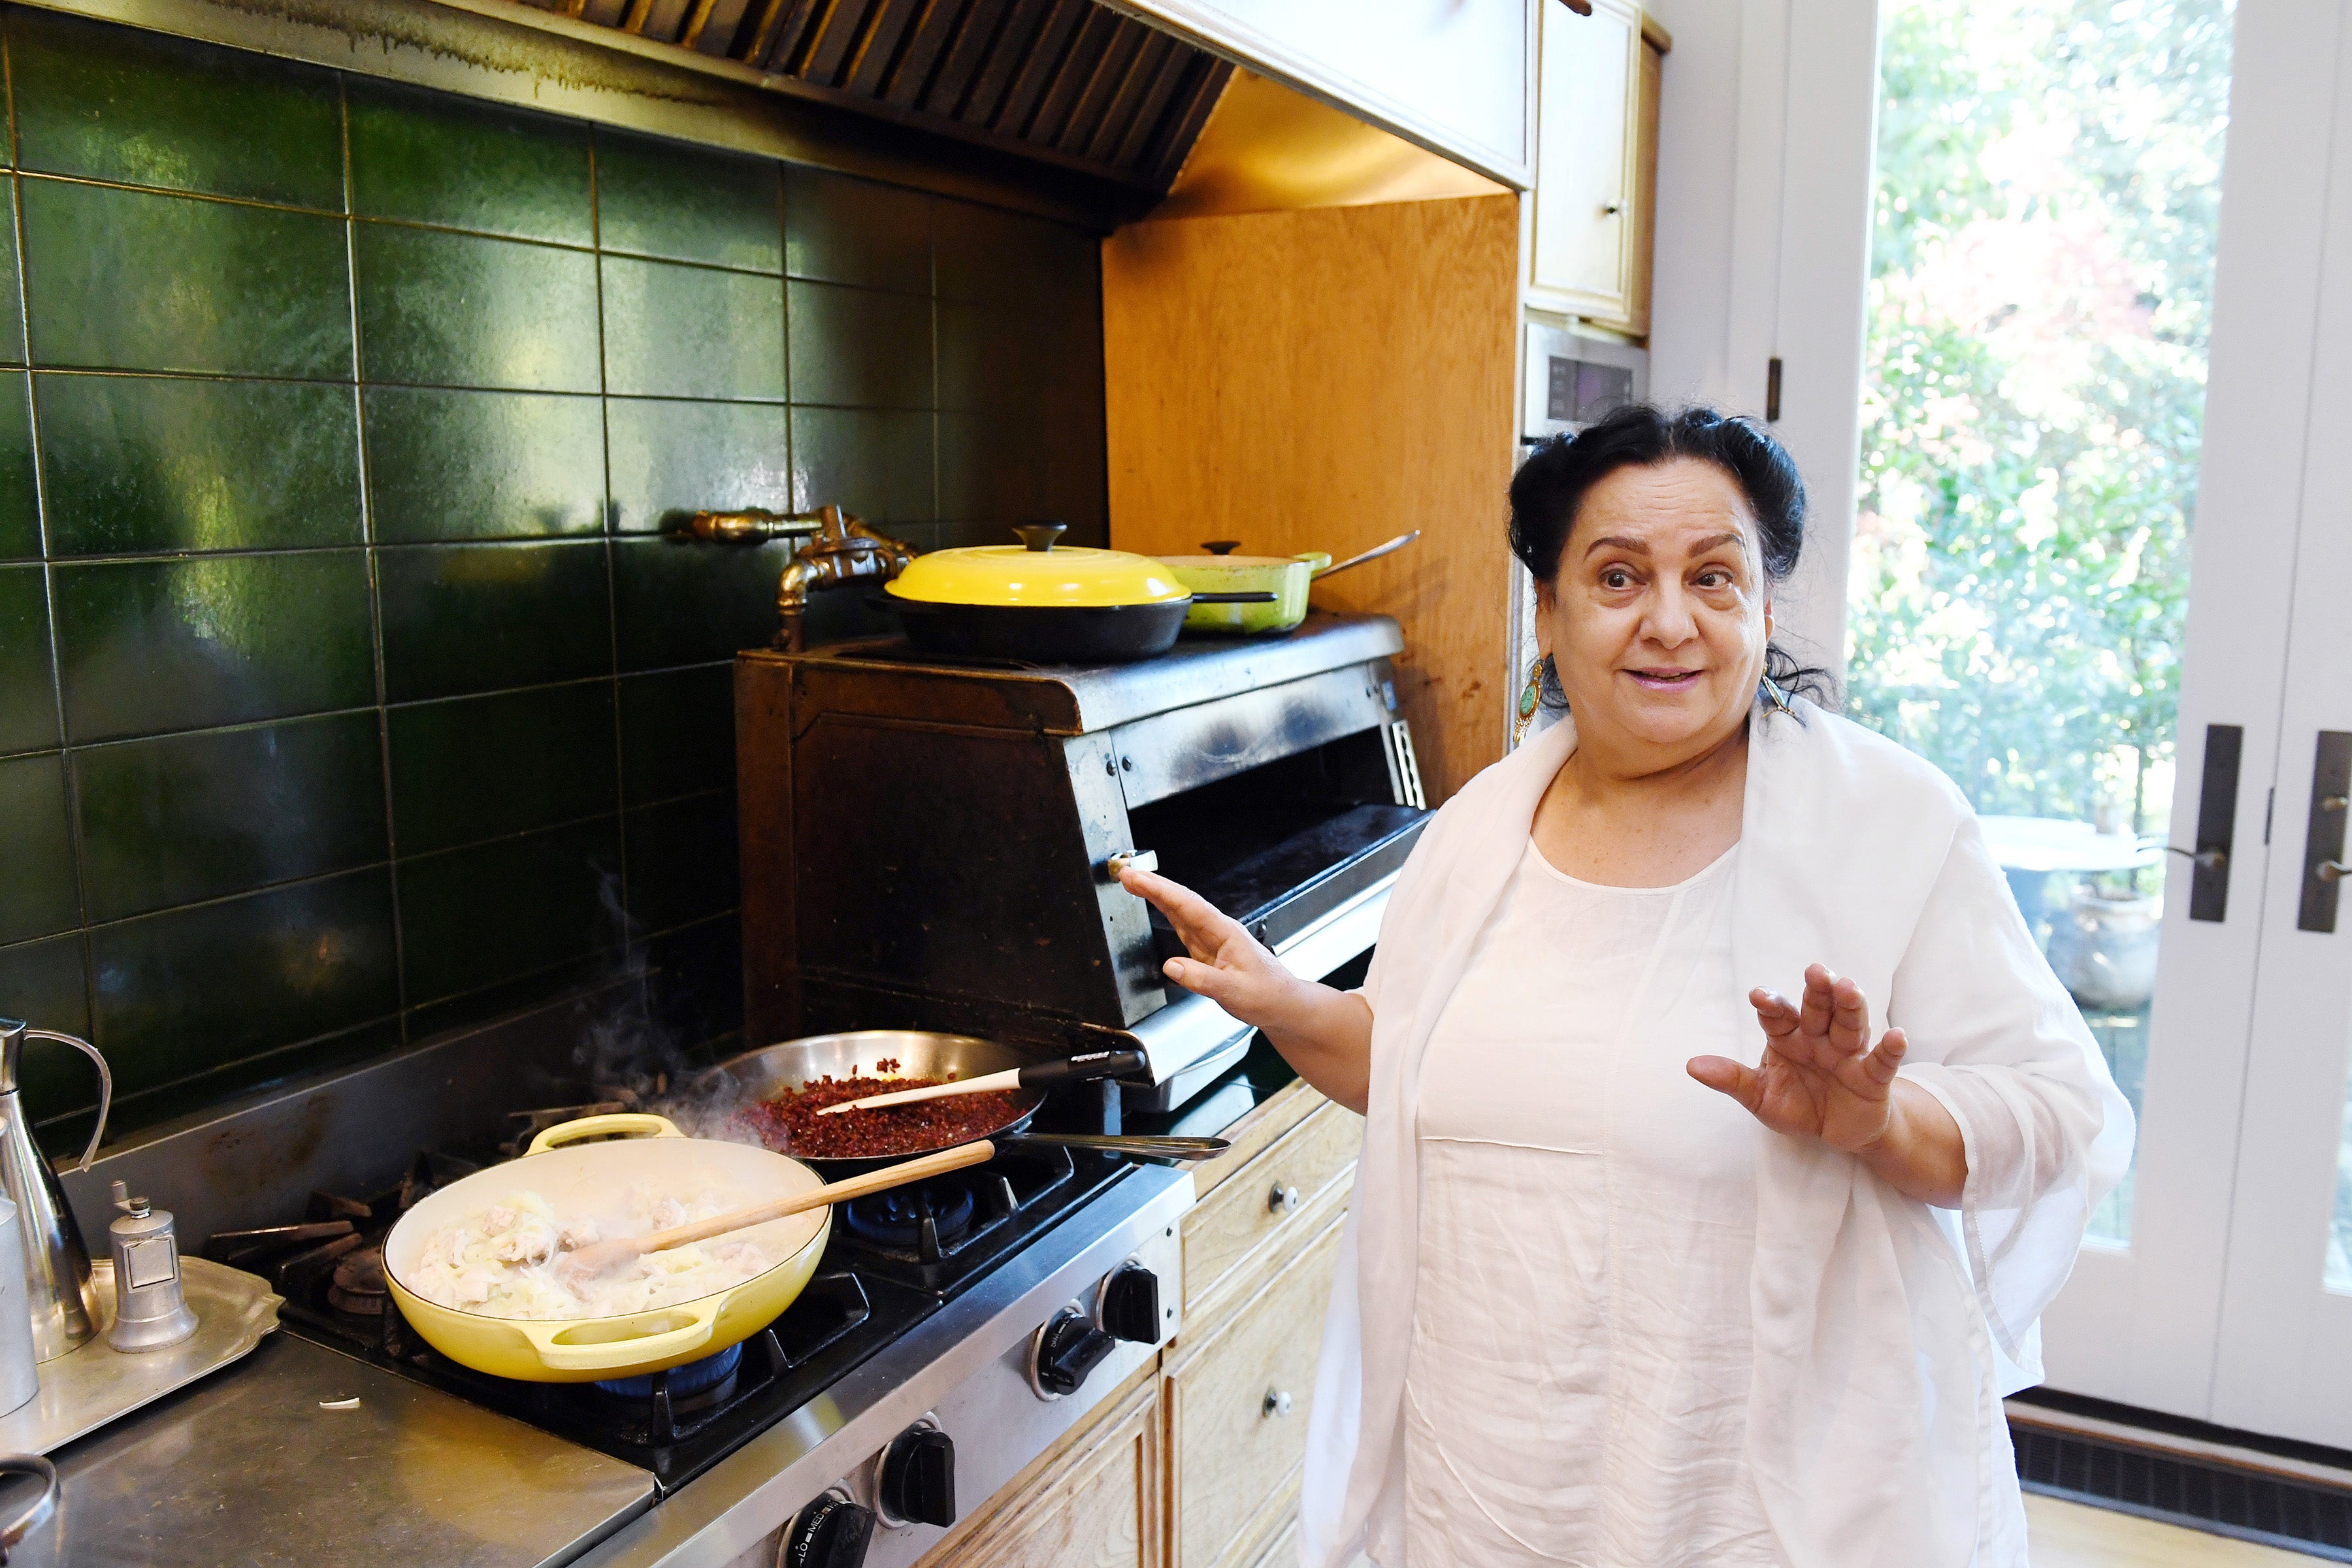 Iranian exile Najmieh Batmanglij wrote definitive cookbooks about her cuisine